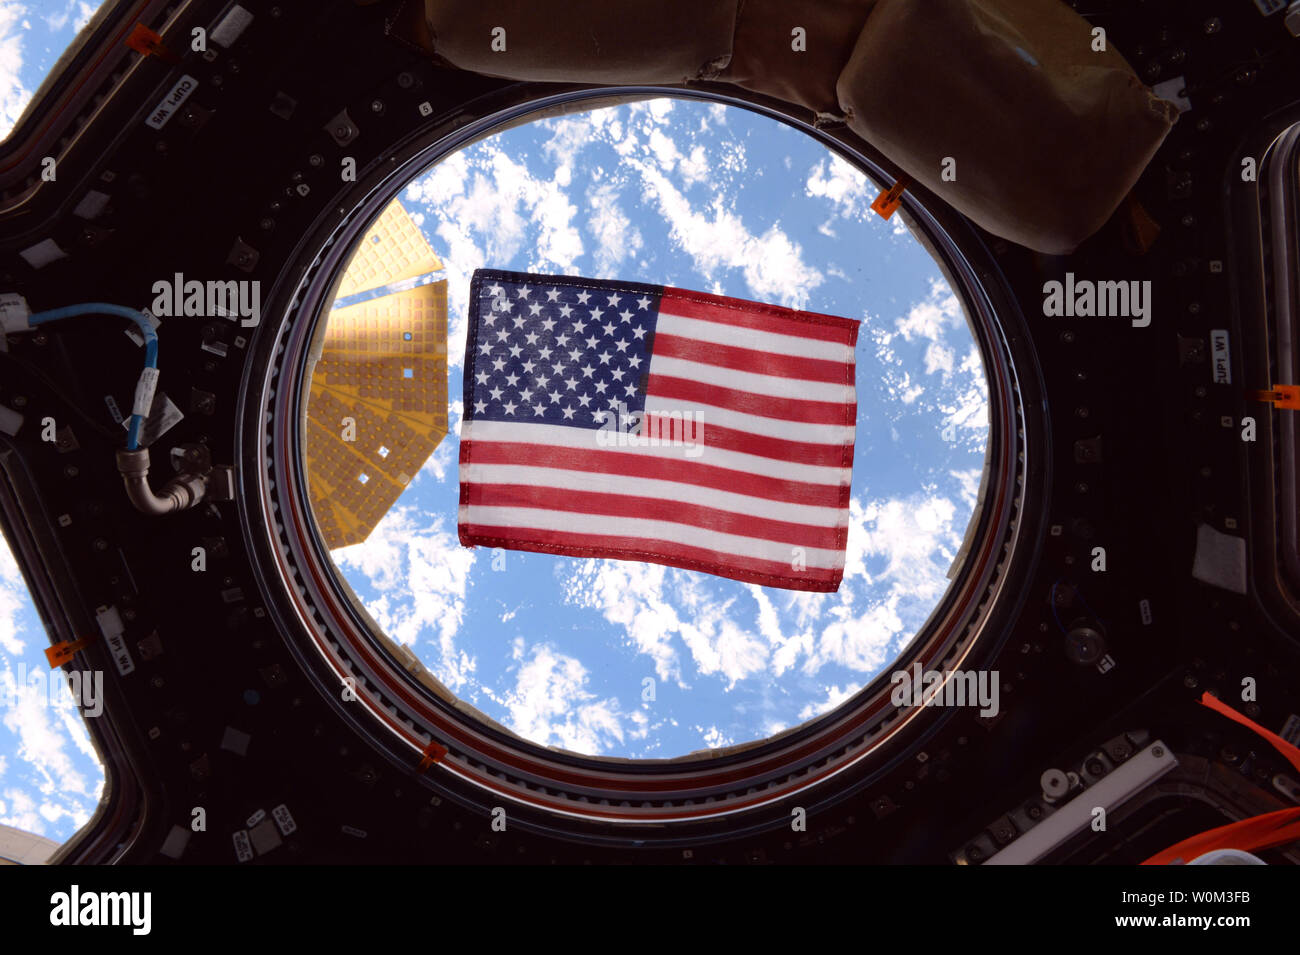 L'astronauta della NASA Jack Fischer ha preso questa fotografia di una bandiera americana in una delle finestre della Stazione Spaziale Internazionale della cupola, una cupola a forma di modulo attraverso il quale le operazioni sulla parte esterna della stazione può essere osservato e guidato. In tutta la NASA la storia, navicelle e veicoli di lancio sono sempre state decorate con bandiere. Quando Ed White è diventato il primo astronauta americano per eseguire un spacewalk il 3 giugno 1965, la sua tuta è stato uno dei primi ad essere adornata con un flag patch. Bianco crewmate Jim McDivitt indossava inoltre un indicatore sulla sua tuta. Gli astronauti hanno acquistato le bandiere se stessi Foto Stock